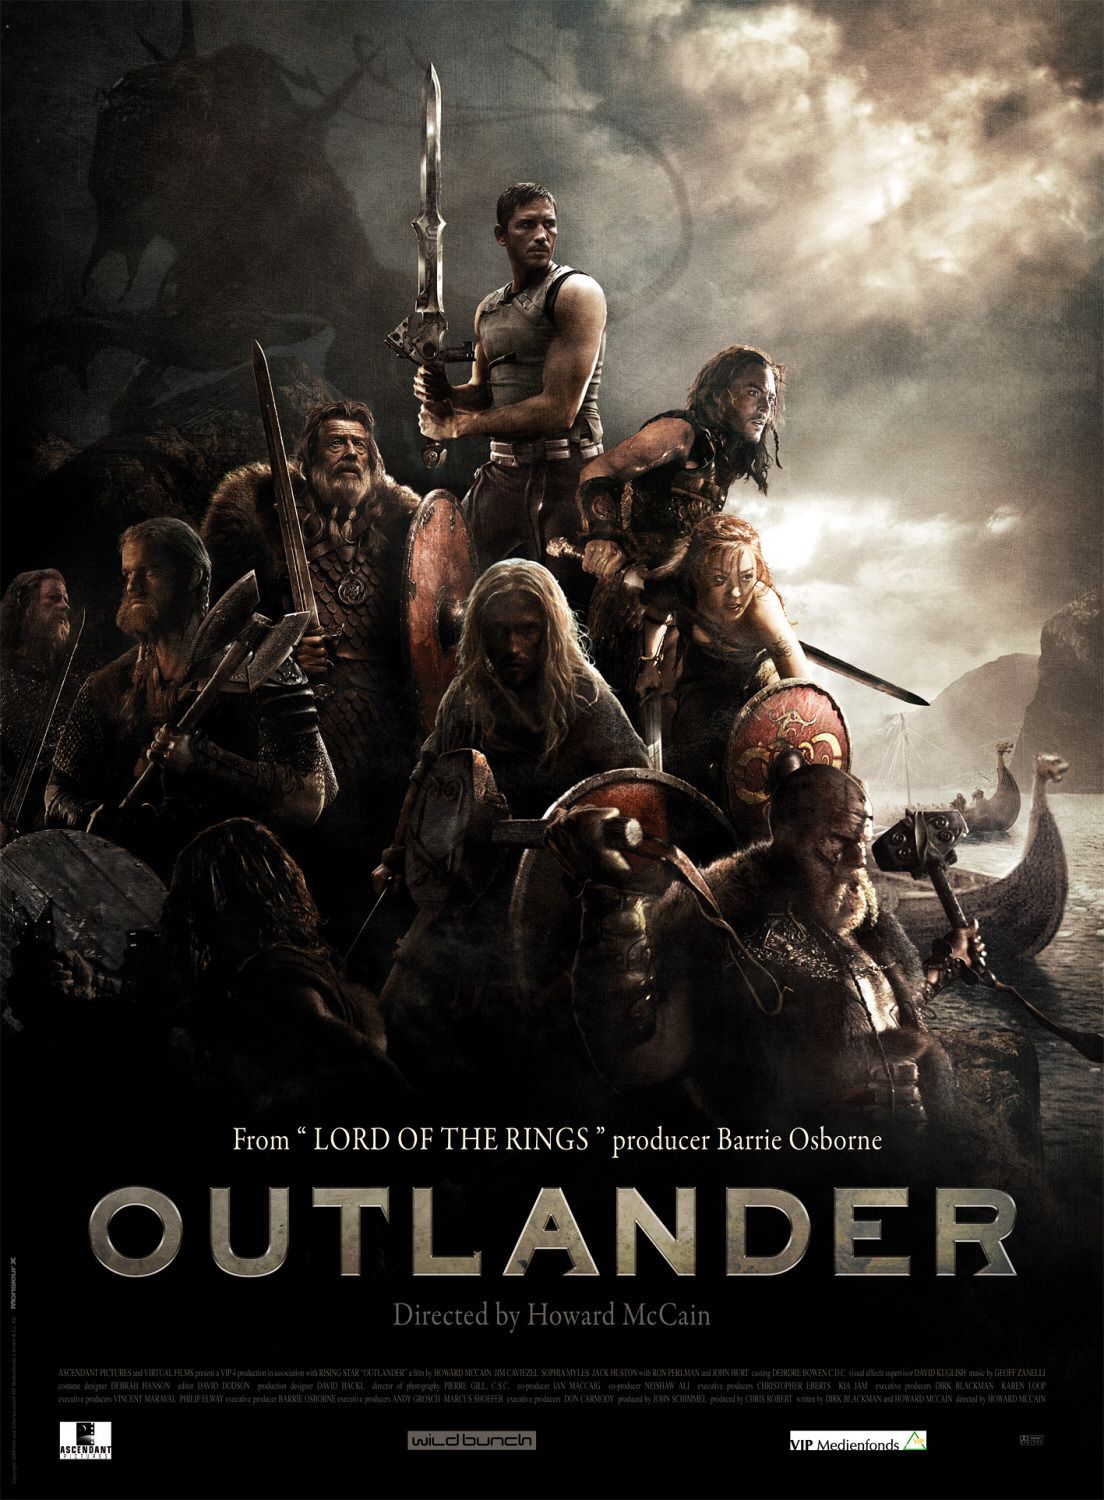 حصريا النسخه الماستر النهائيه من فيلم التاريخ Outlander.2008 DvdrIp 270 MB مترجم Outlander_xlg